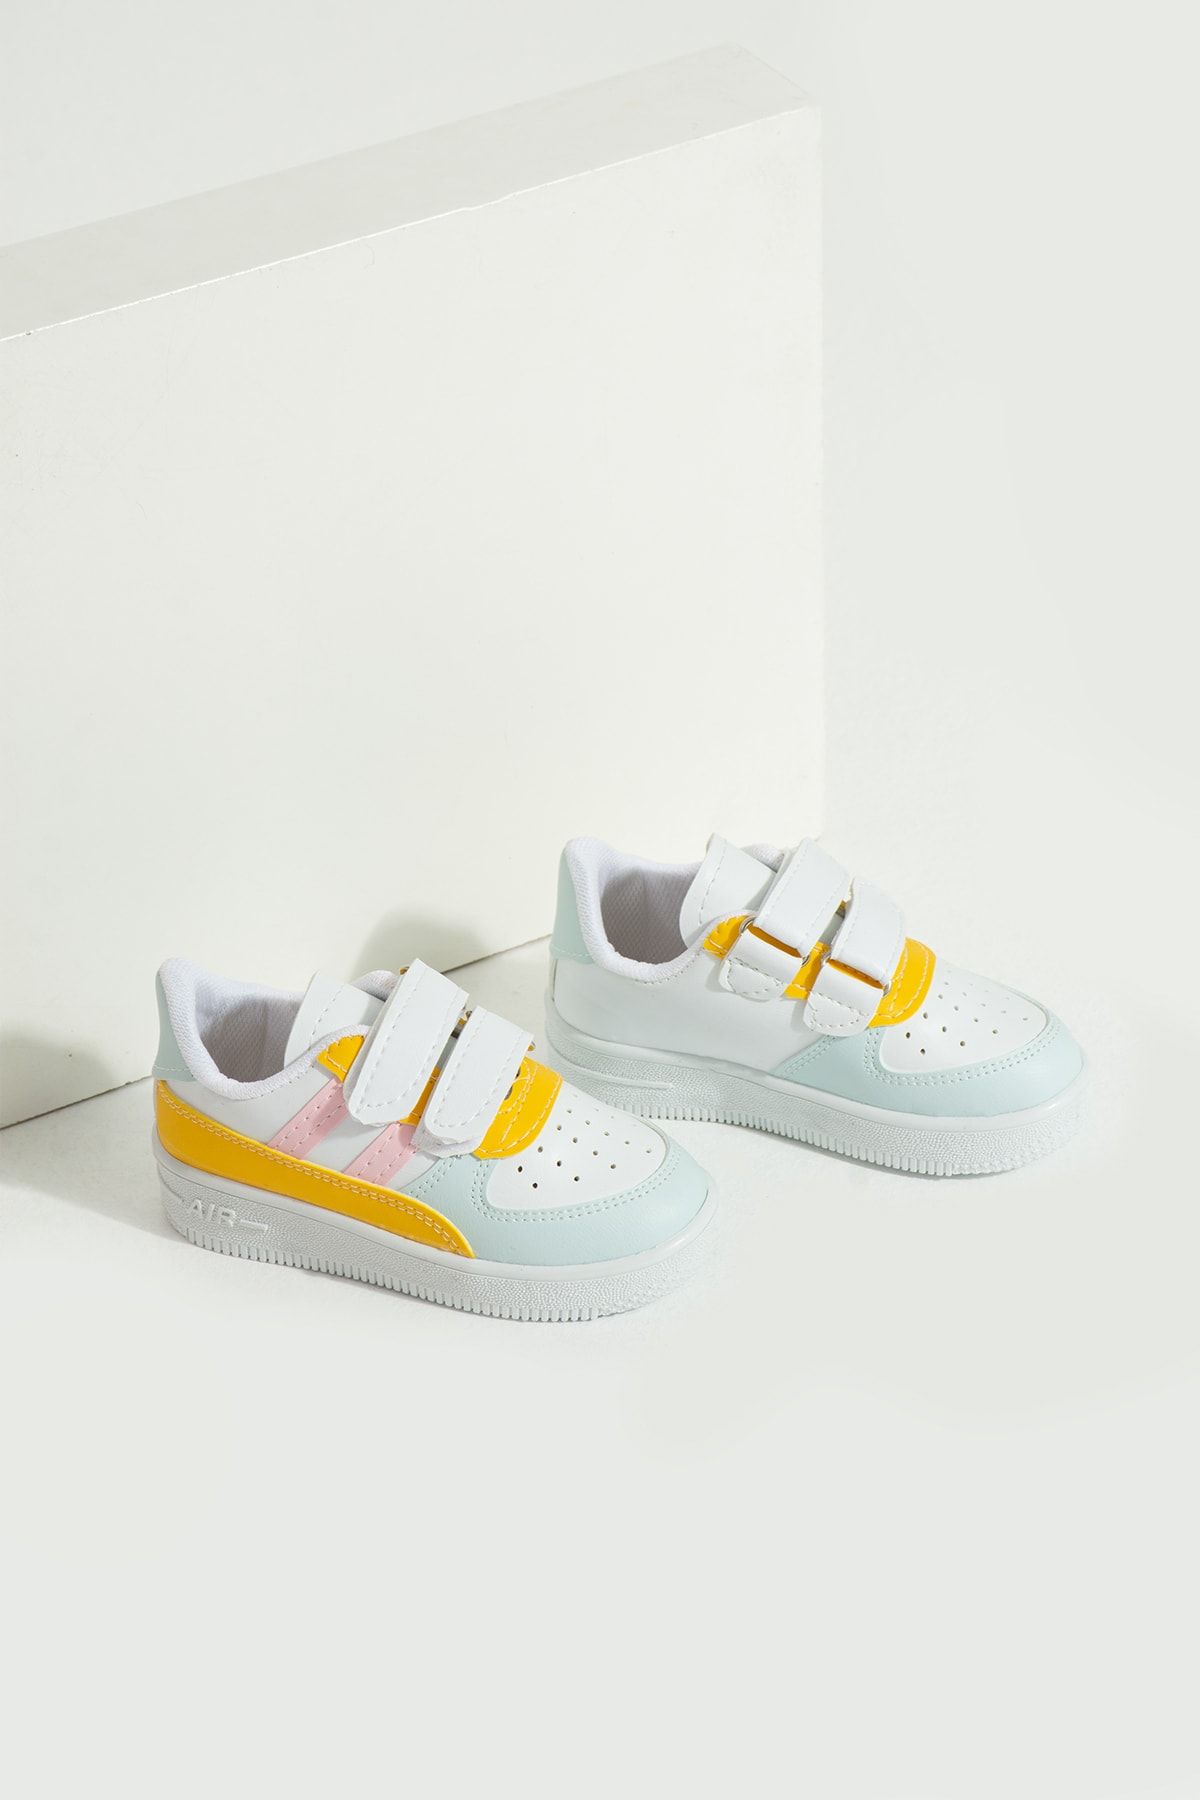 Pembe Potin Çocuk Unisex Gri Sarı Sneakers Cırtlı Spor Rahat Çocuk Ayakkabısı